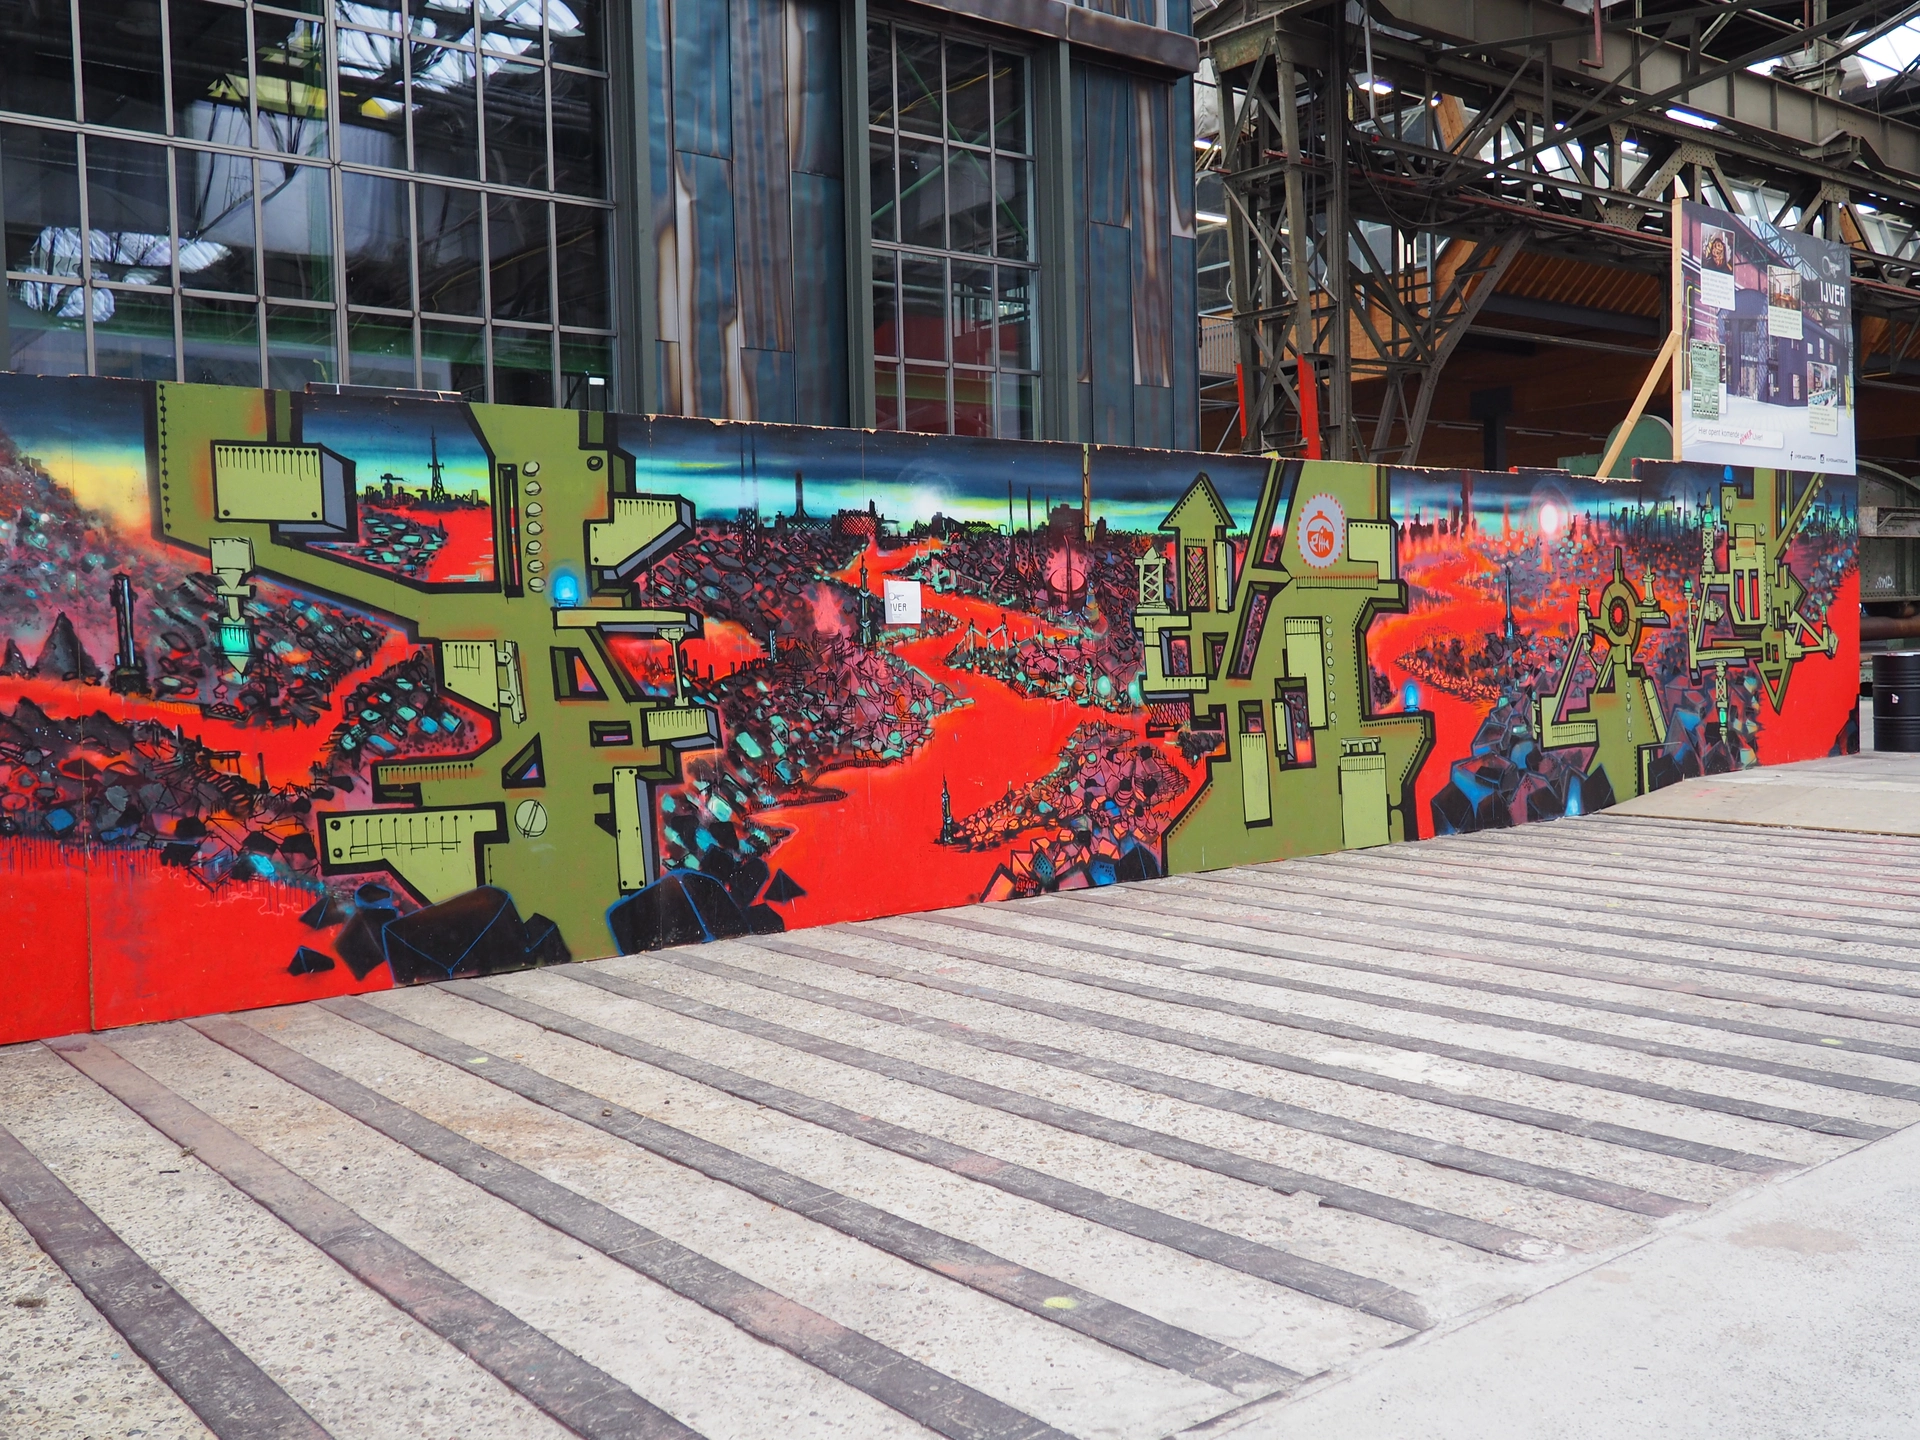 Oeuvre de Street Art réalisée par Ijver à Amsterdam